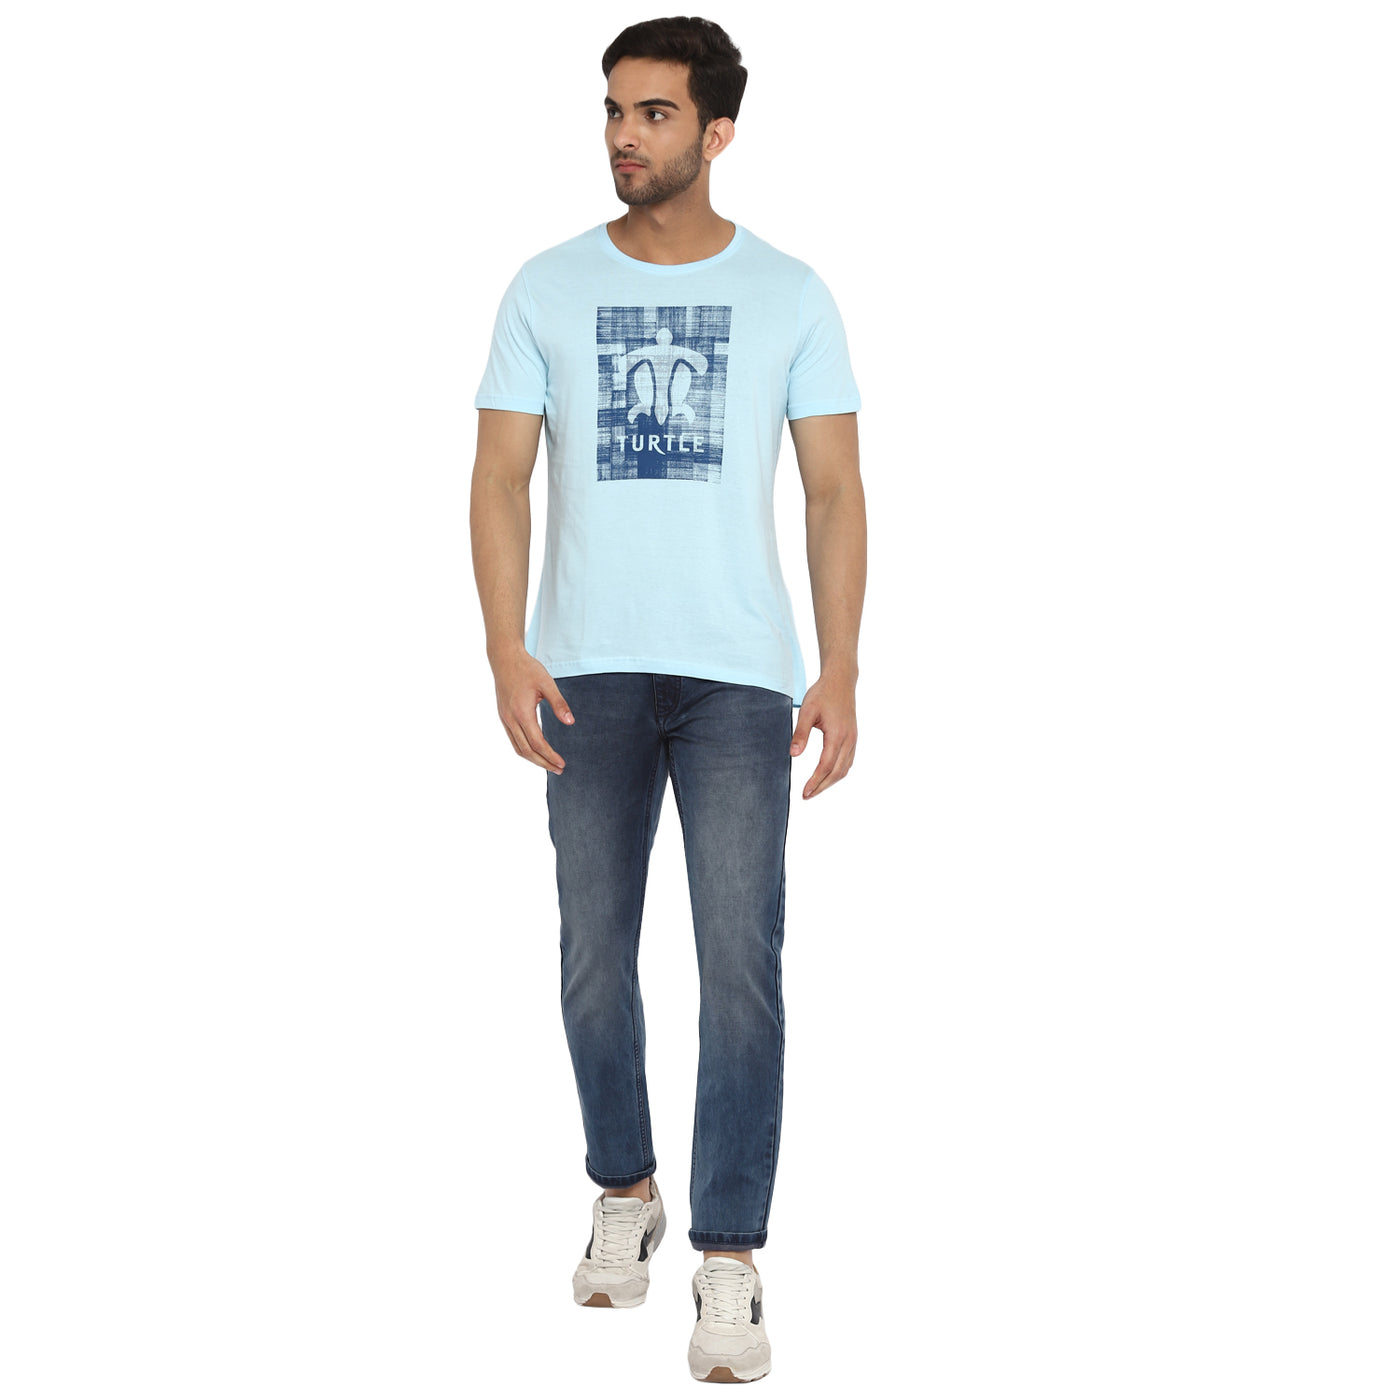 Essentials Sky Blue Printed Round Neck T-Shirt